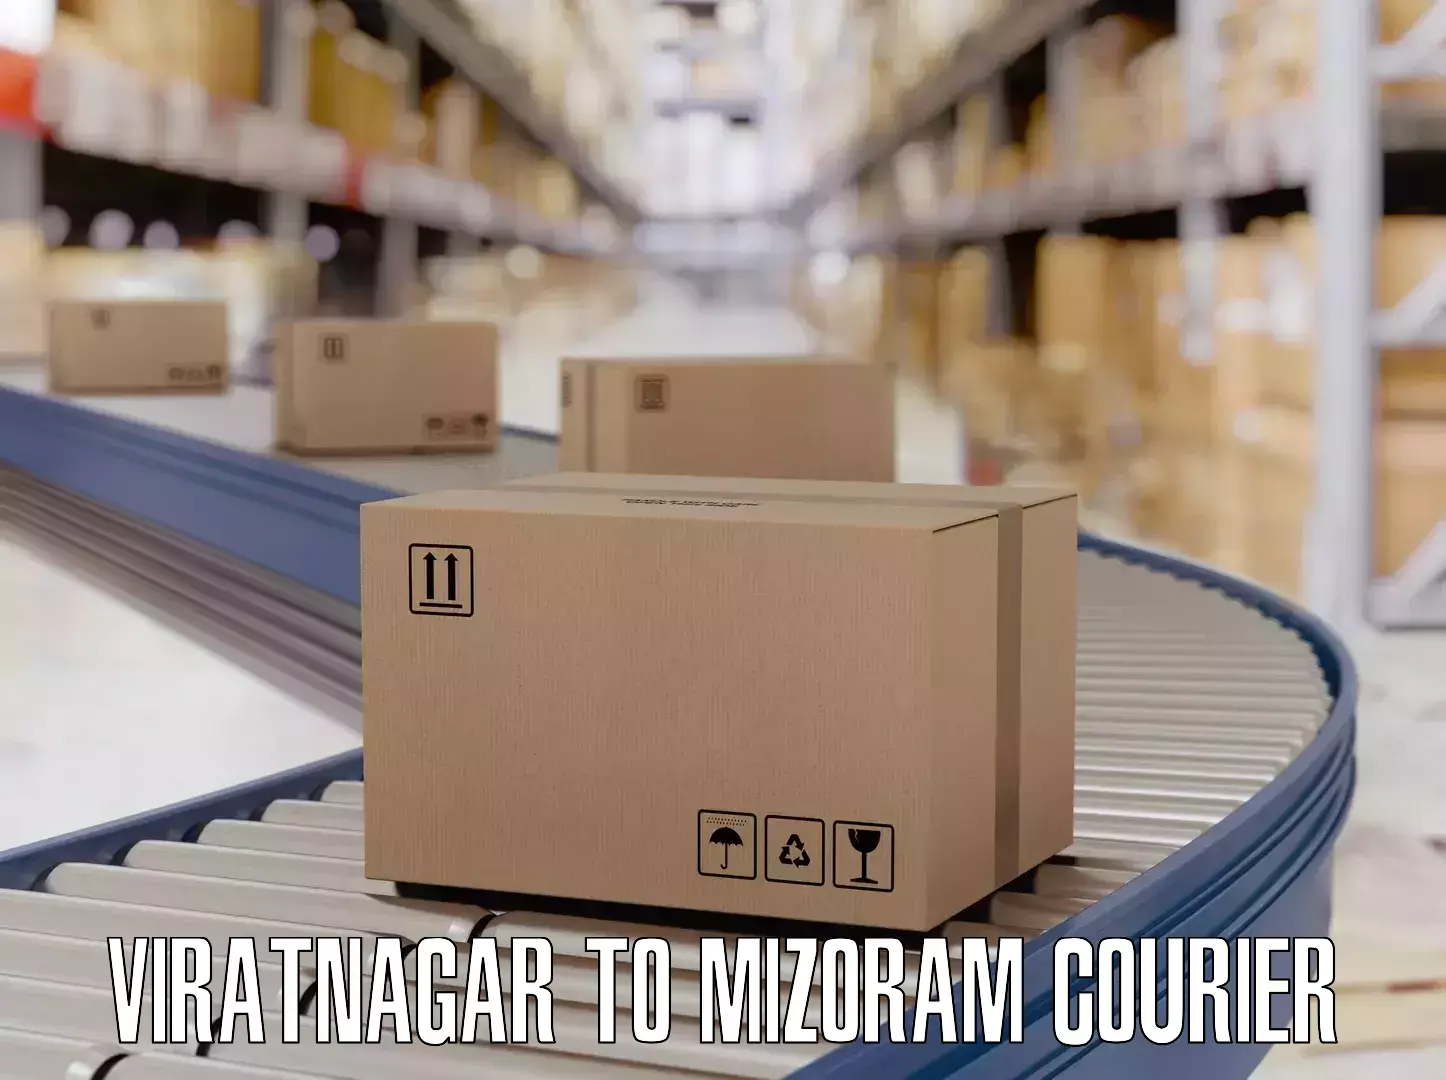 Luggage courier network Viratnagar to Mizoram